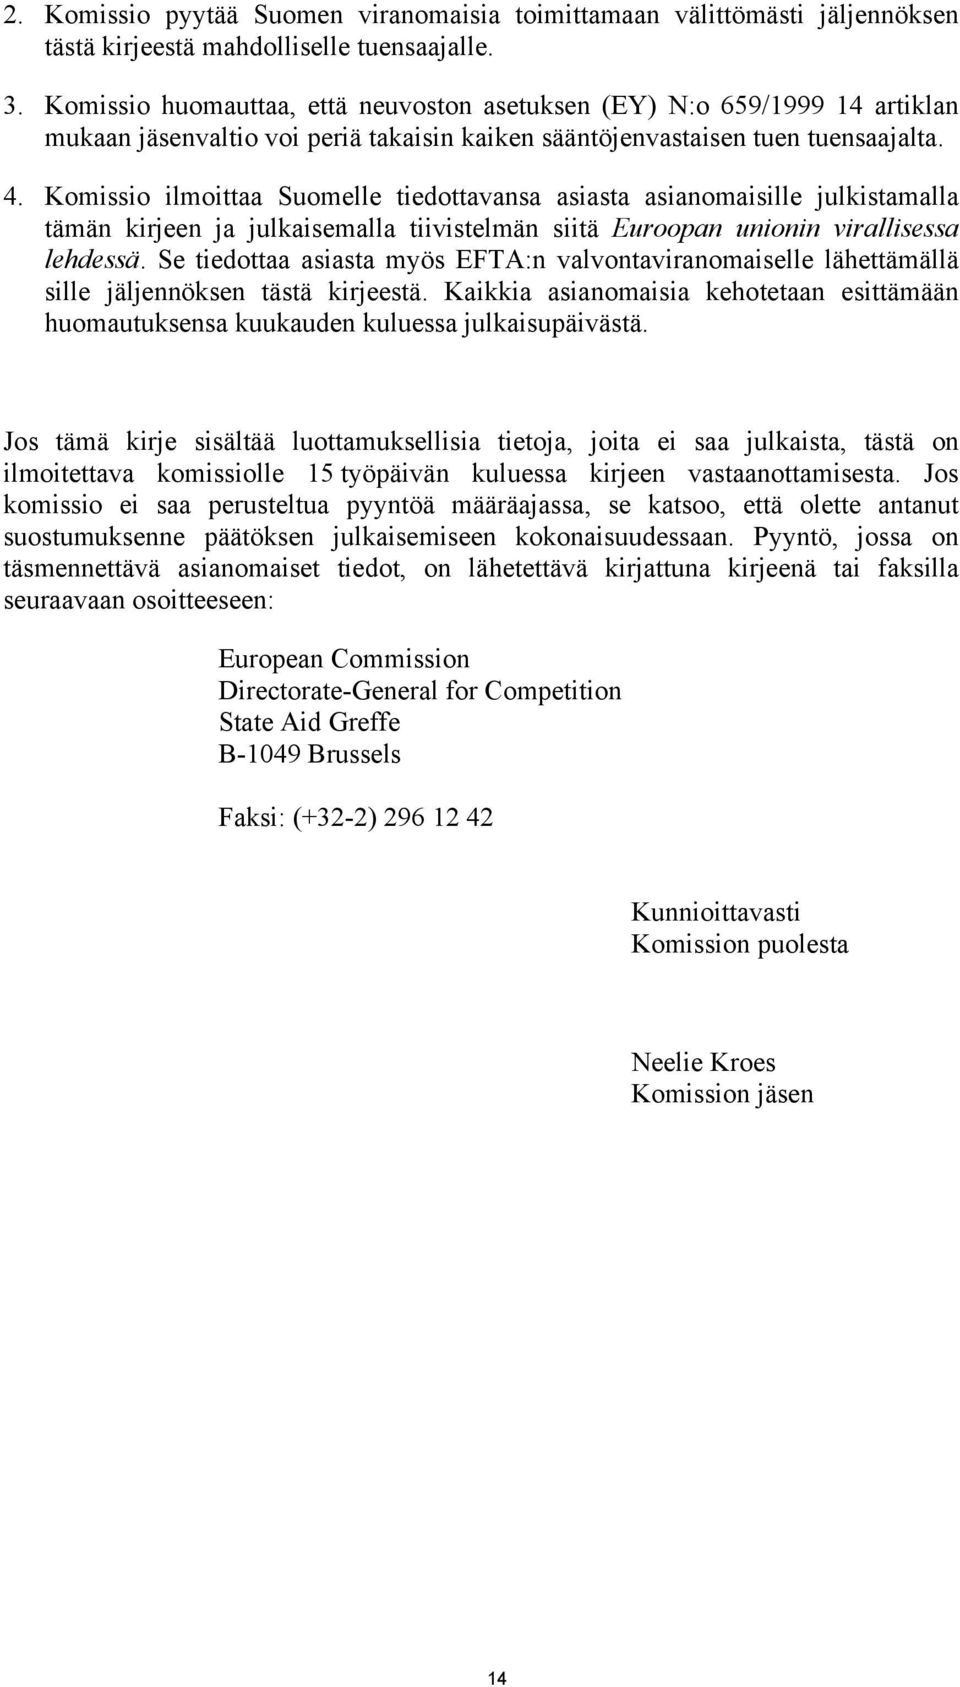 Komissio ilmoittaa Suomelle tiedottavansa asiasta asianomaisille julkistamalla tämän kirjeen ja julkaisemalla tiivistelmän siitä Euroopan unionin virallisessa lehdessä.